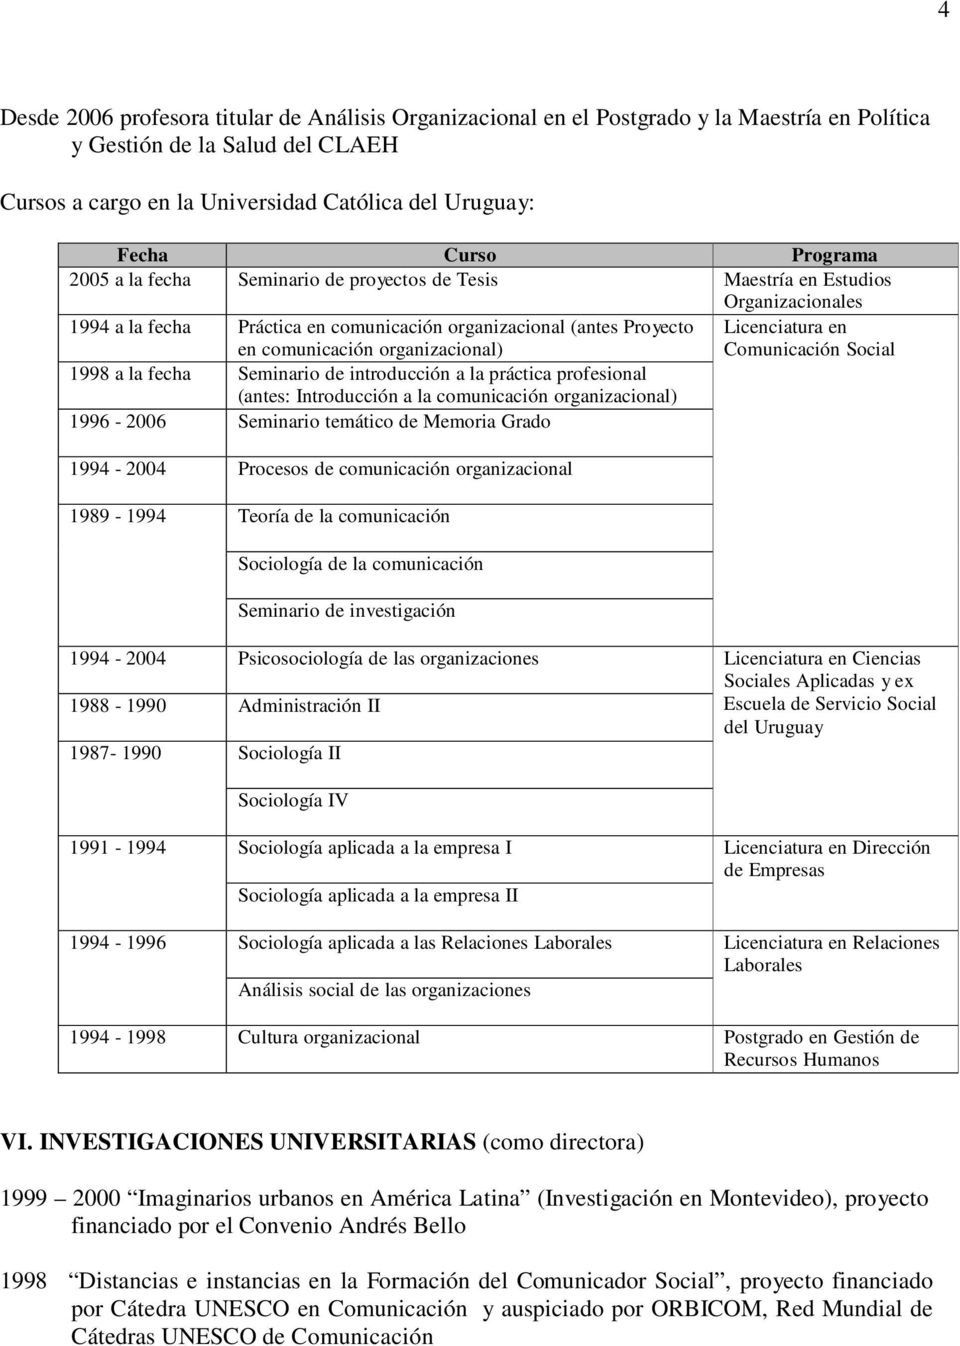 organizacional) Comunicación Social 1998 a la fecha Seminario de introducción a la práctica profesional (antes: Introducción a la comunicación organizacional) 1996-2006 Seminario temático de Memoria